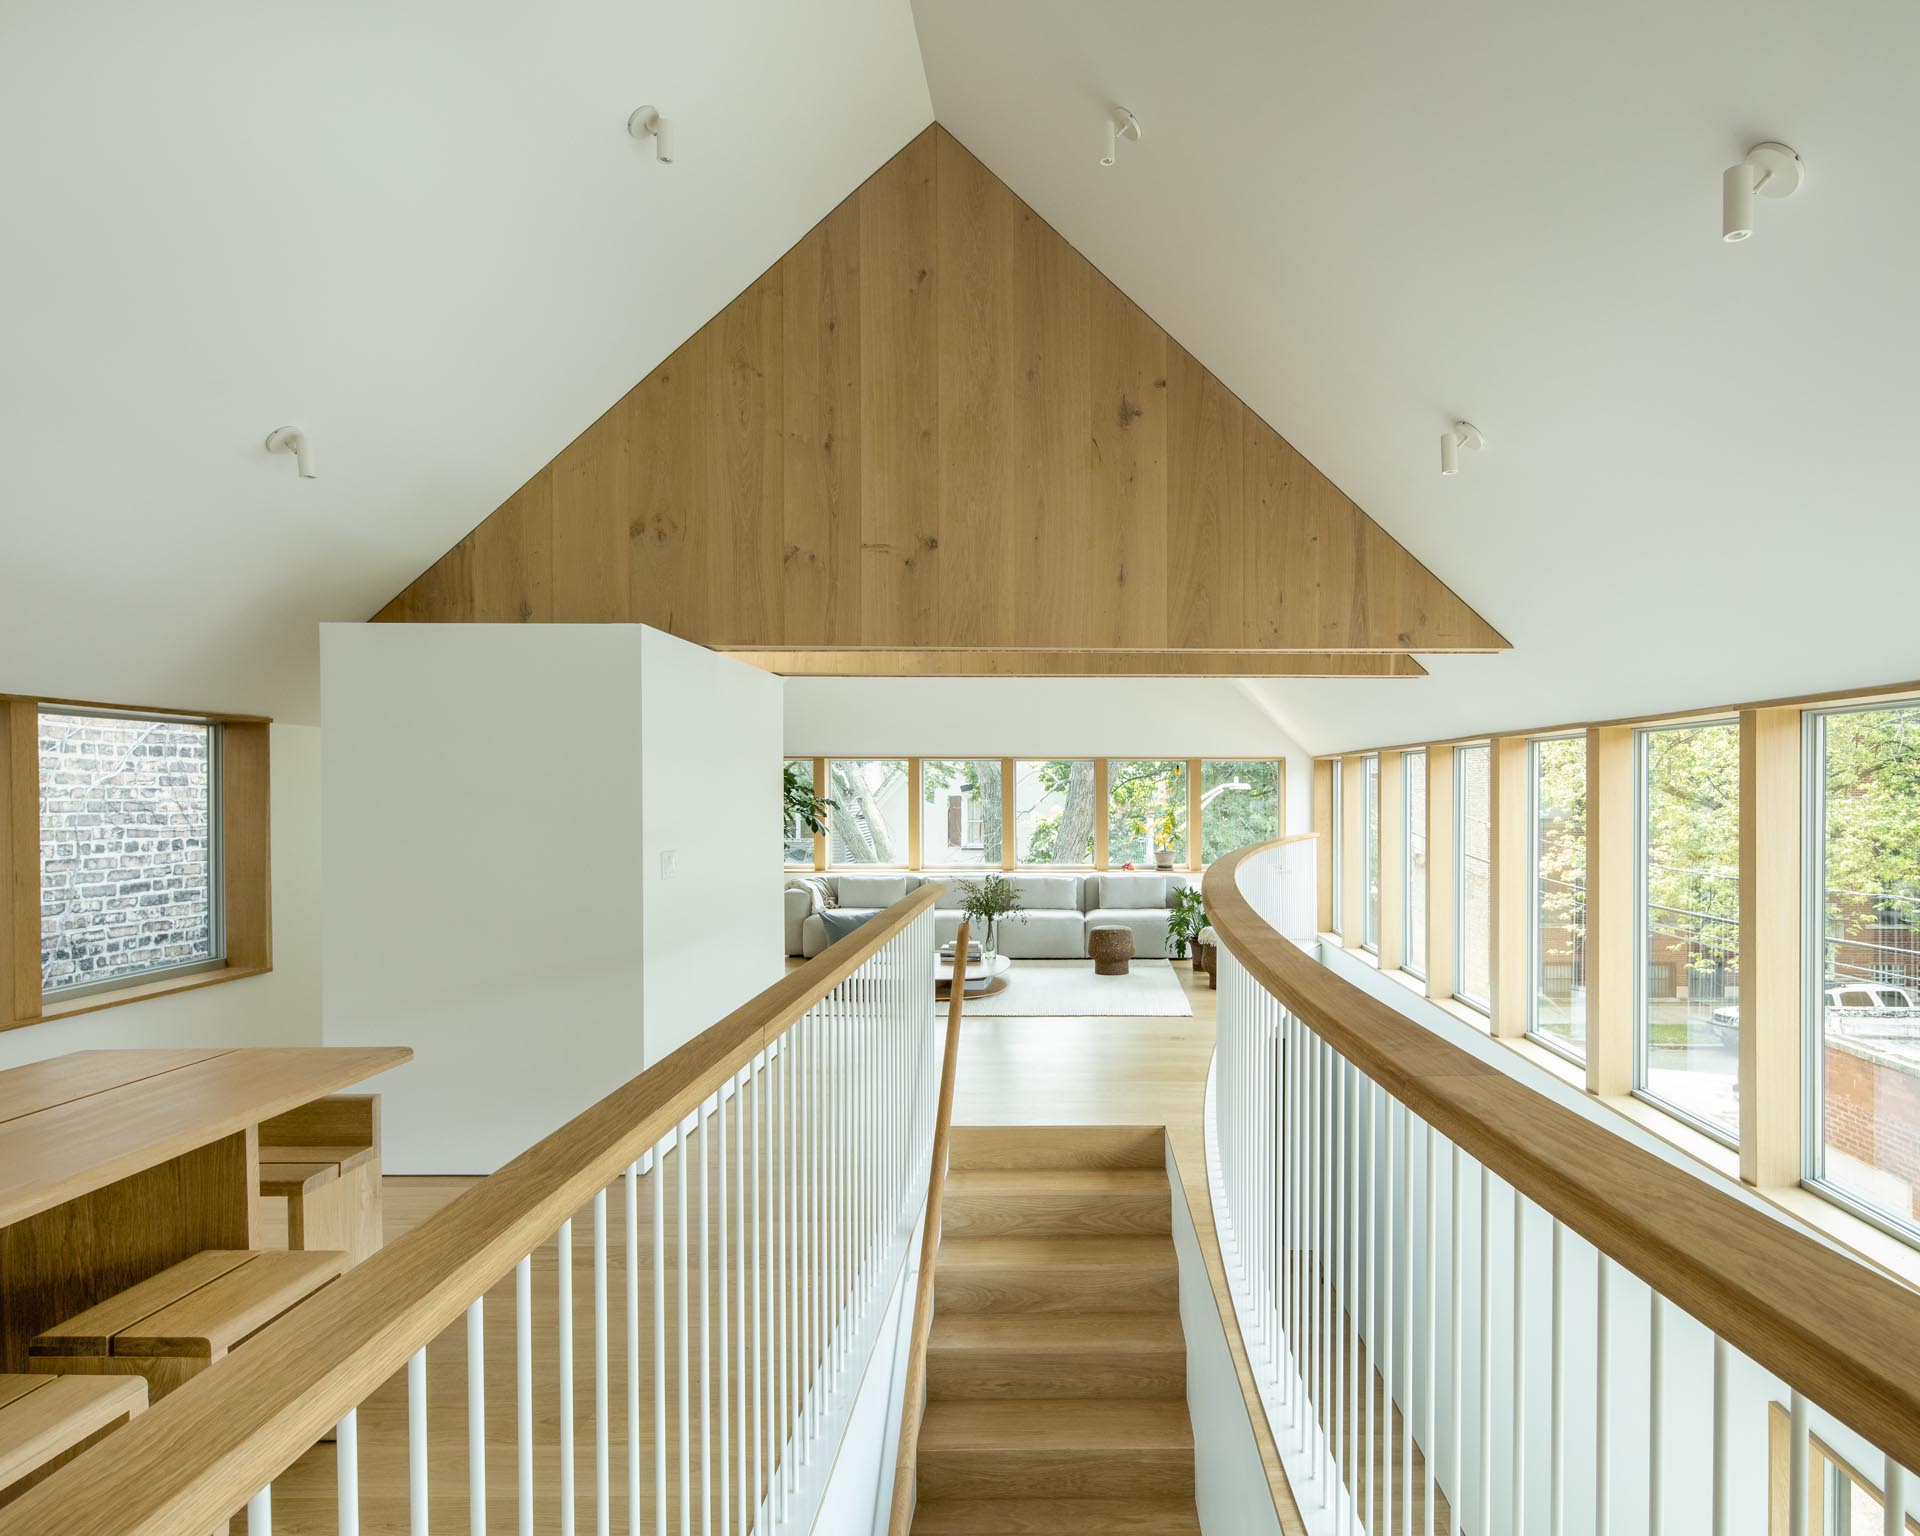 Деревянная лестница с соответствующими поручнями и перилами ведет в общественные зоны этого современного дома.